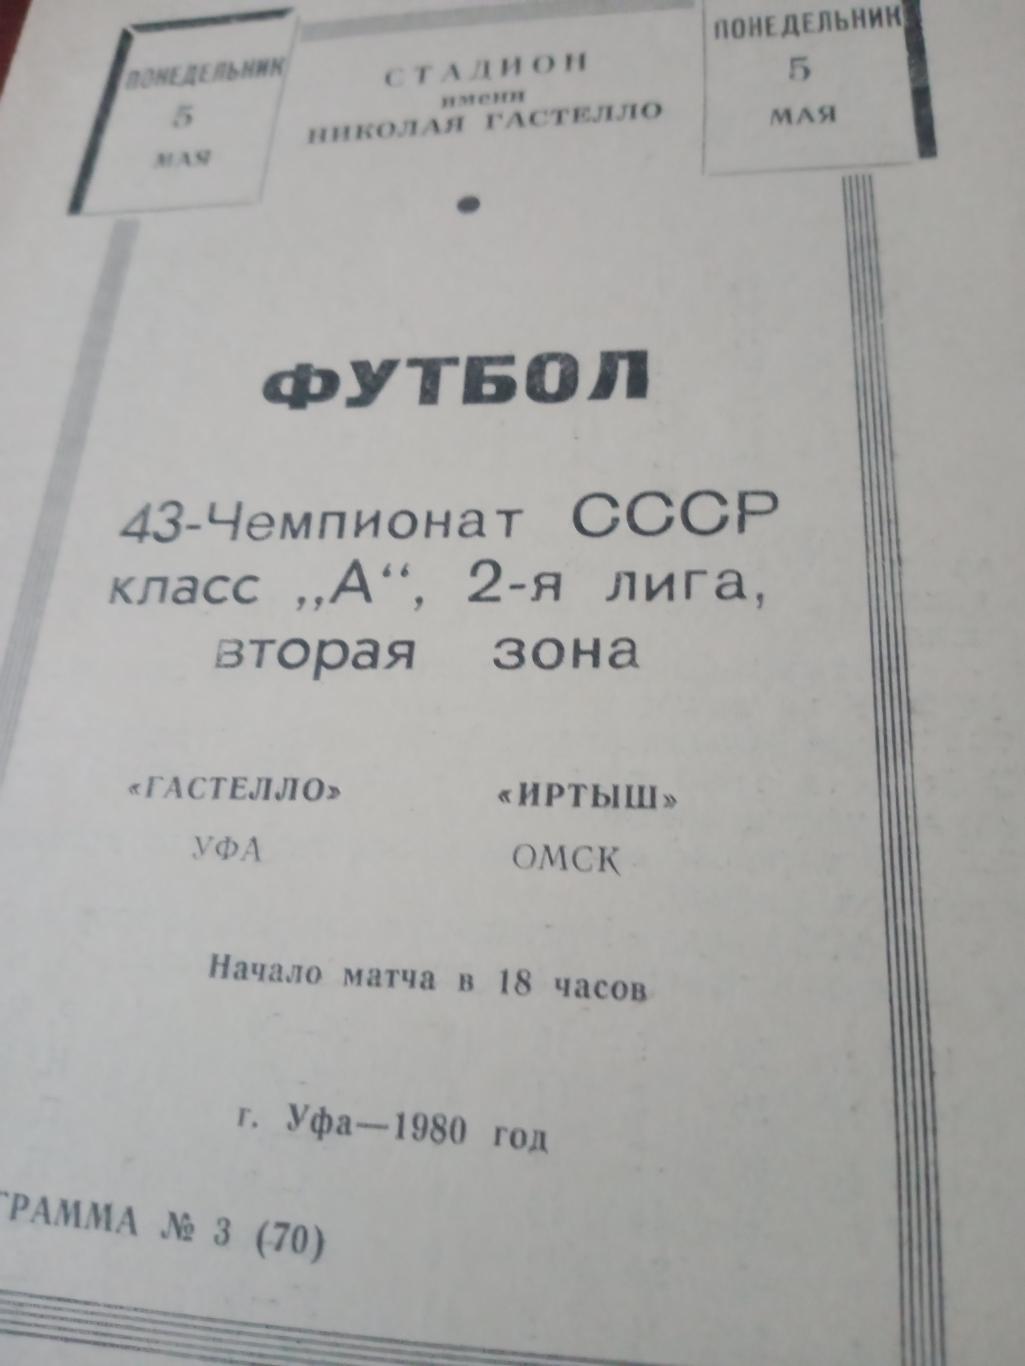 Гастелло Уфа - Иртыш Омск.5 мая 1980 год